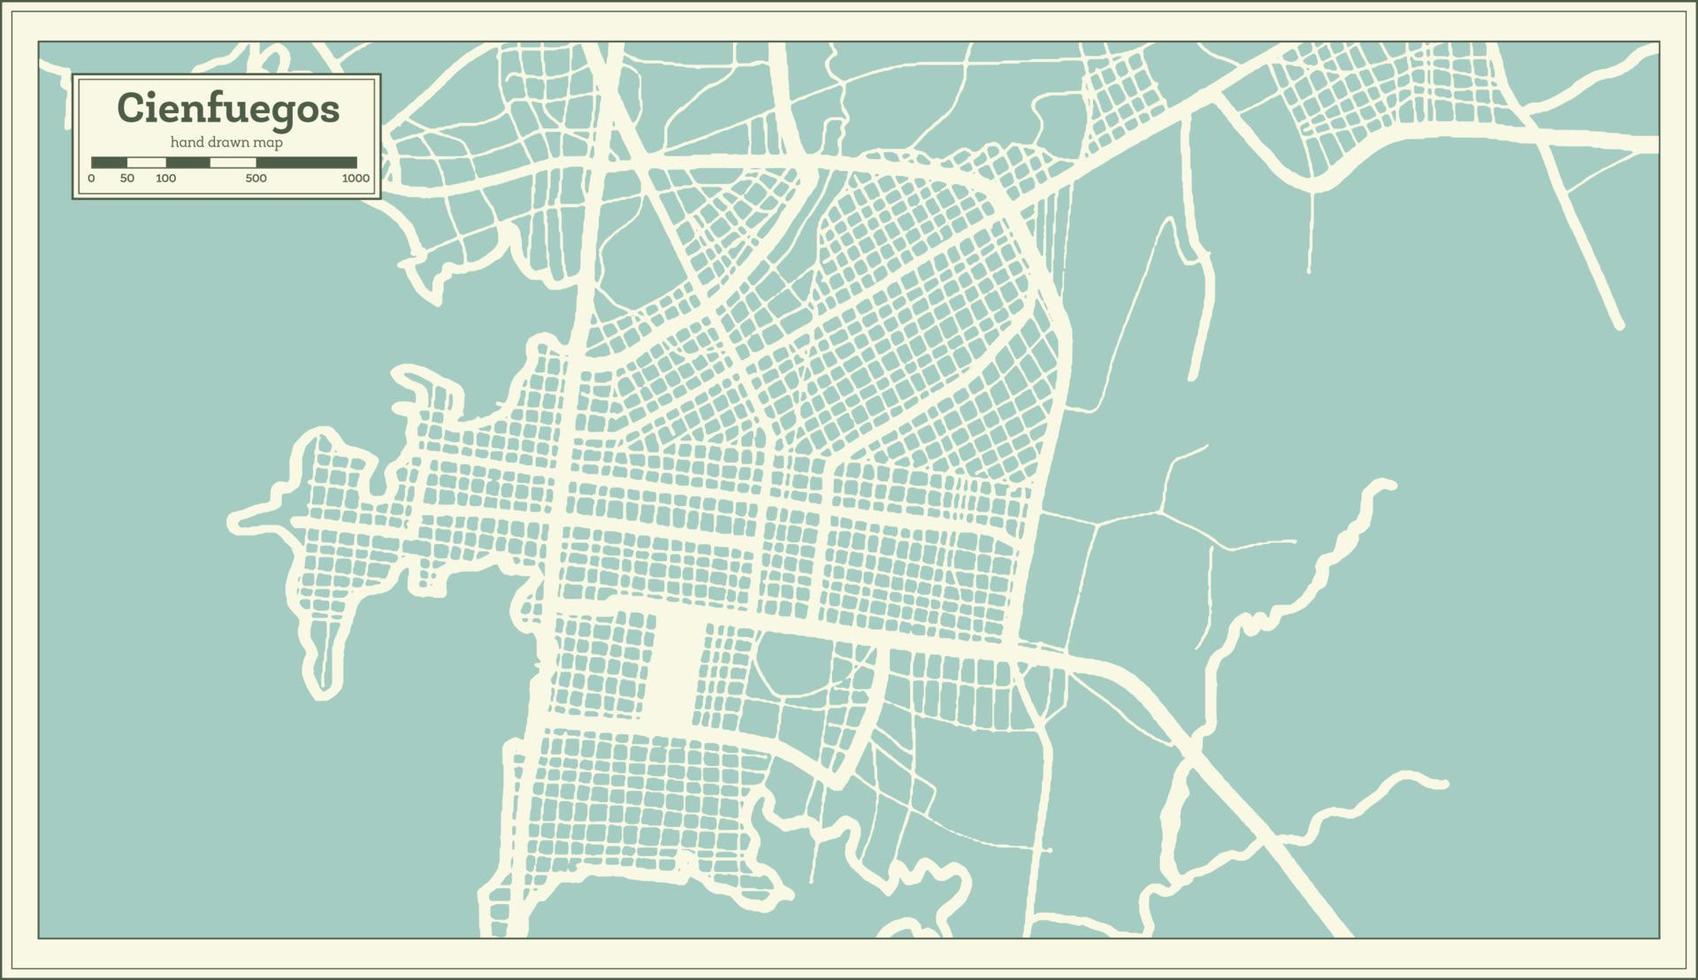 plan de la ville de cienfuegos cuba dans un style rétro. carte muette. vecteur